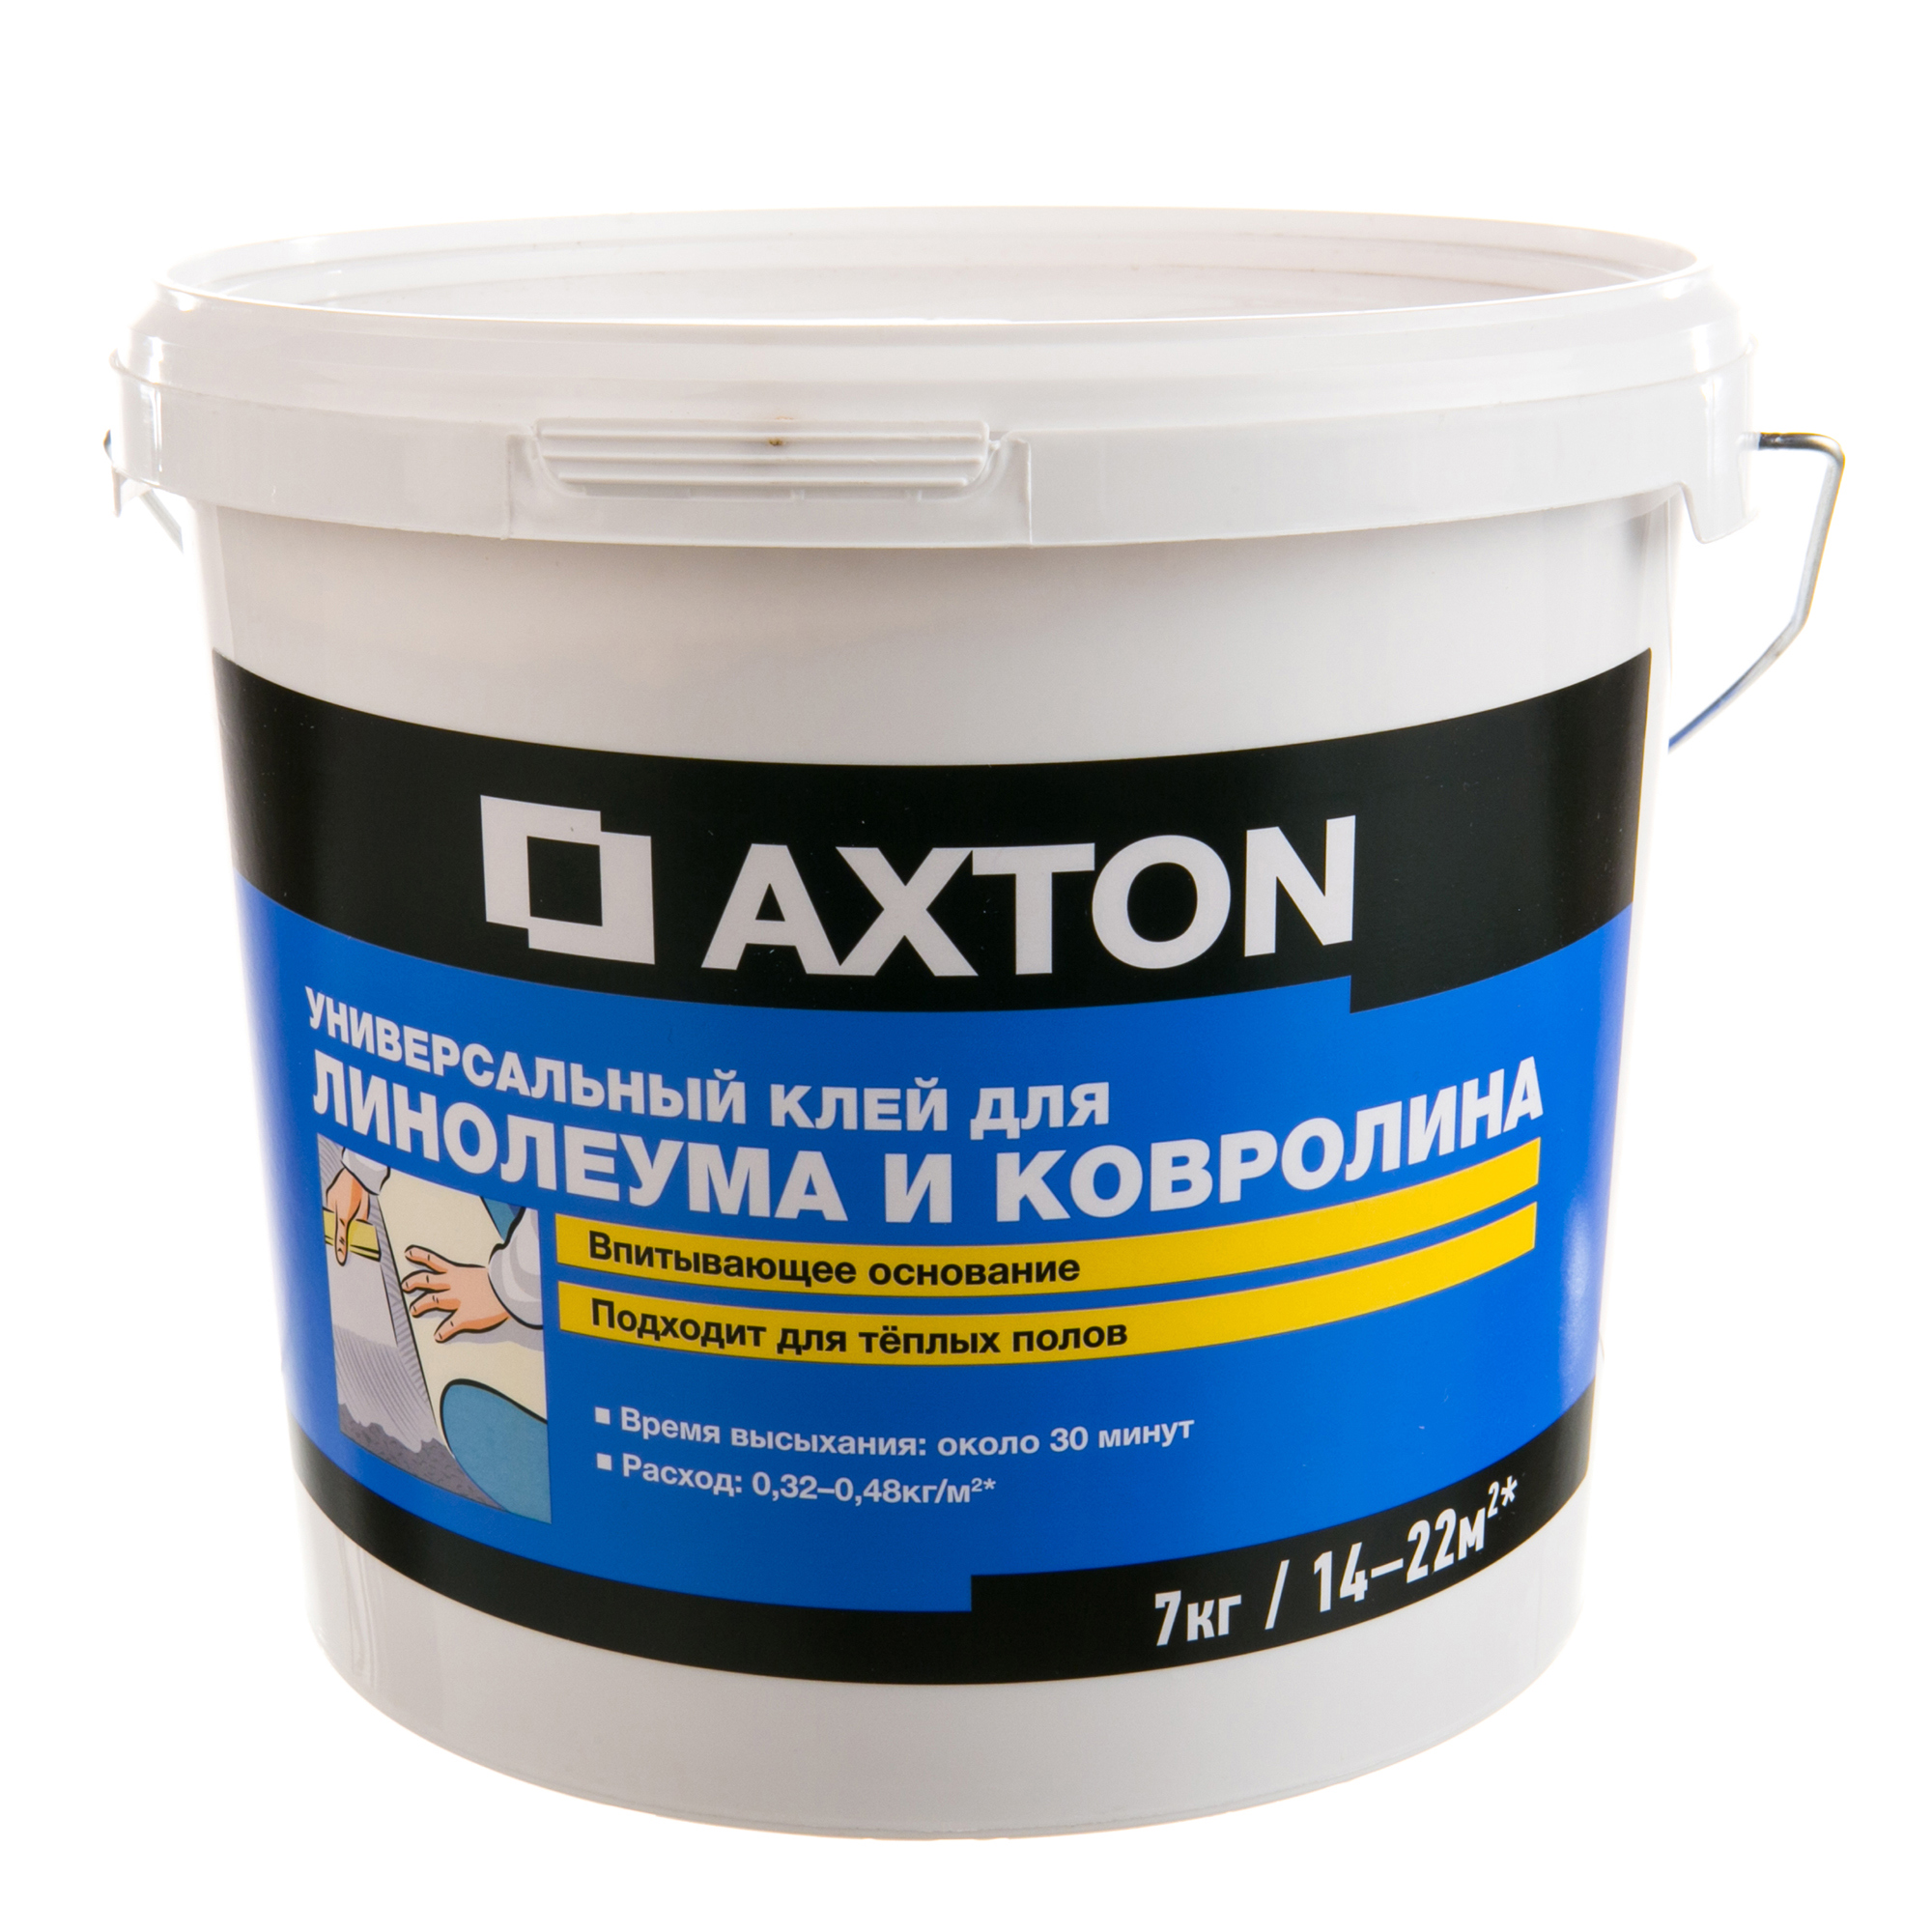  Axton универсальный для линолеума и ковролина, 7 кг по цене 1765 .